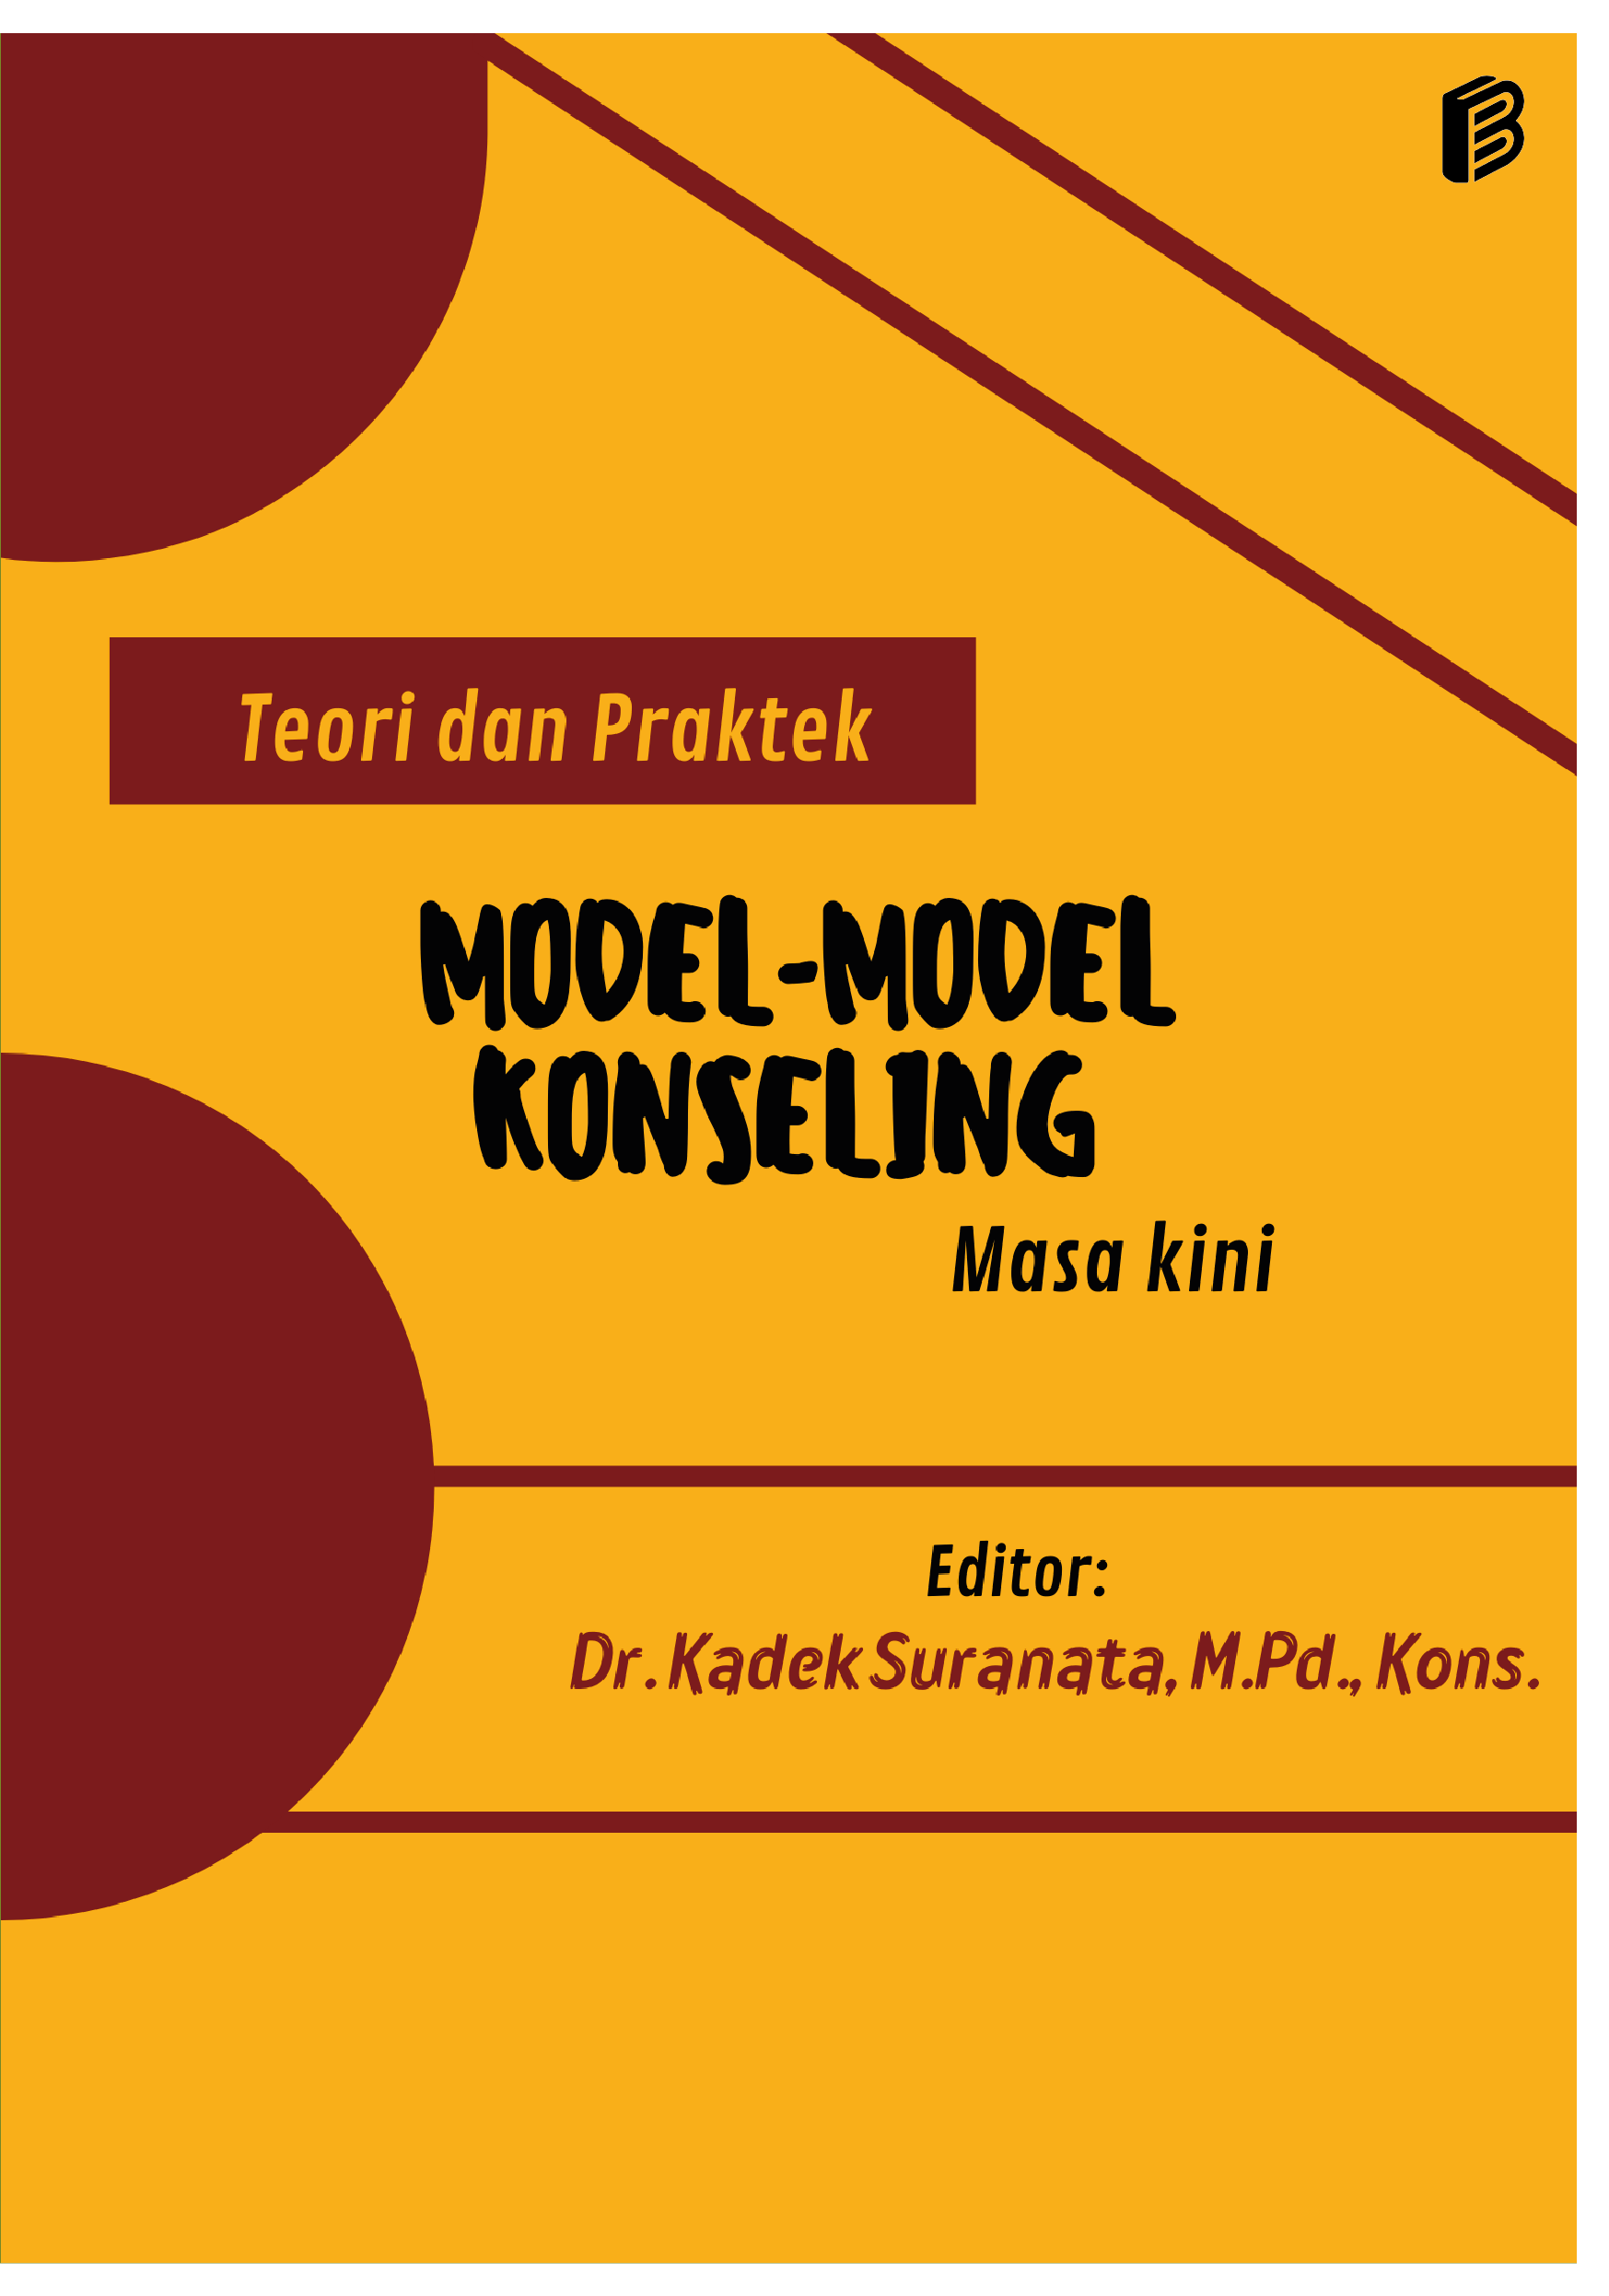 cover/(19-10-2022)teori-dan-praktek-model---model-konseling-masa-kini.png